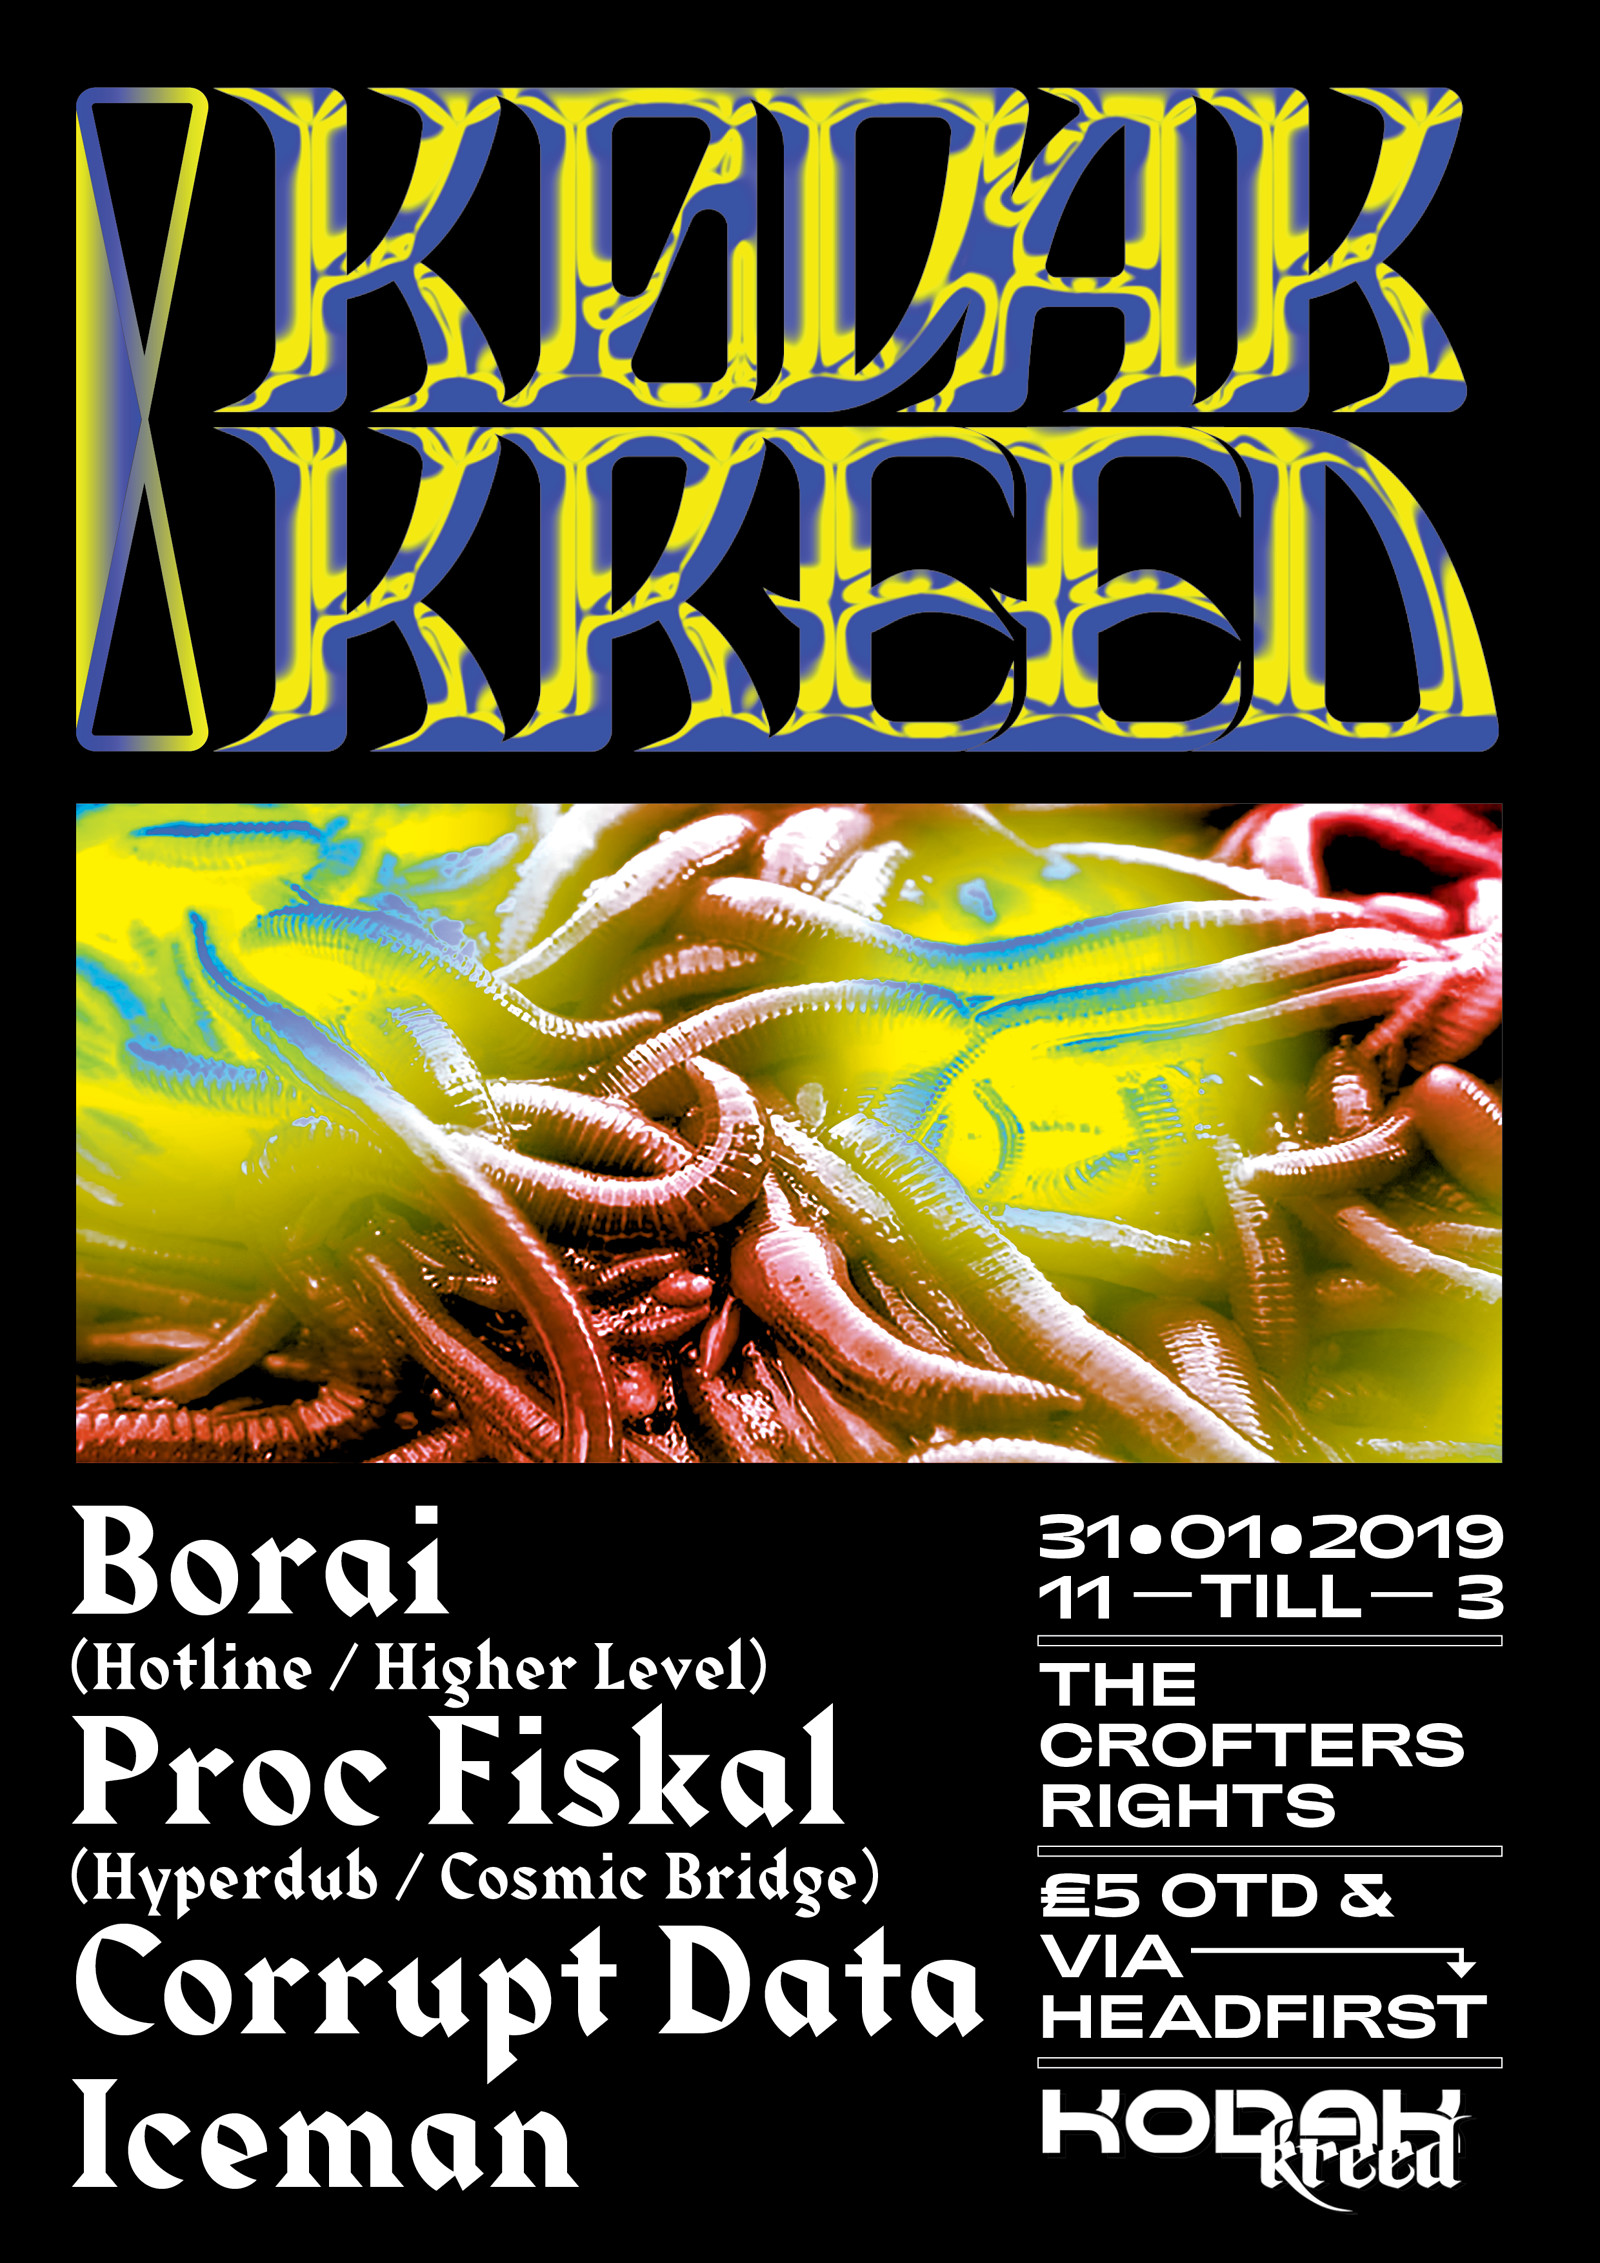 Kodak Kreed #8: Borai, Proc Fiskal, Corrupt Data at Crofters Rights